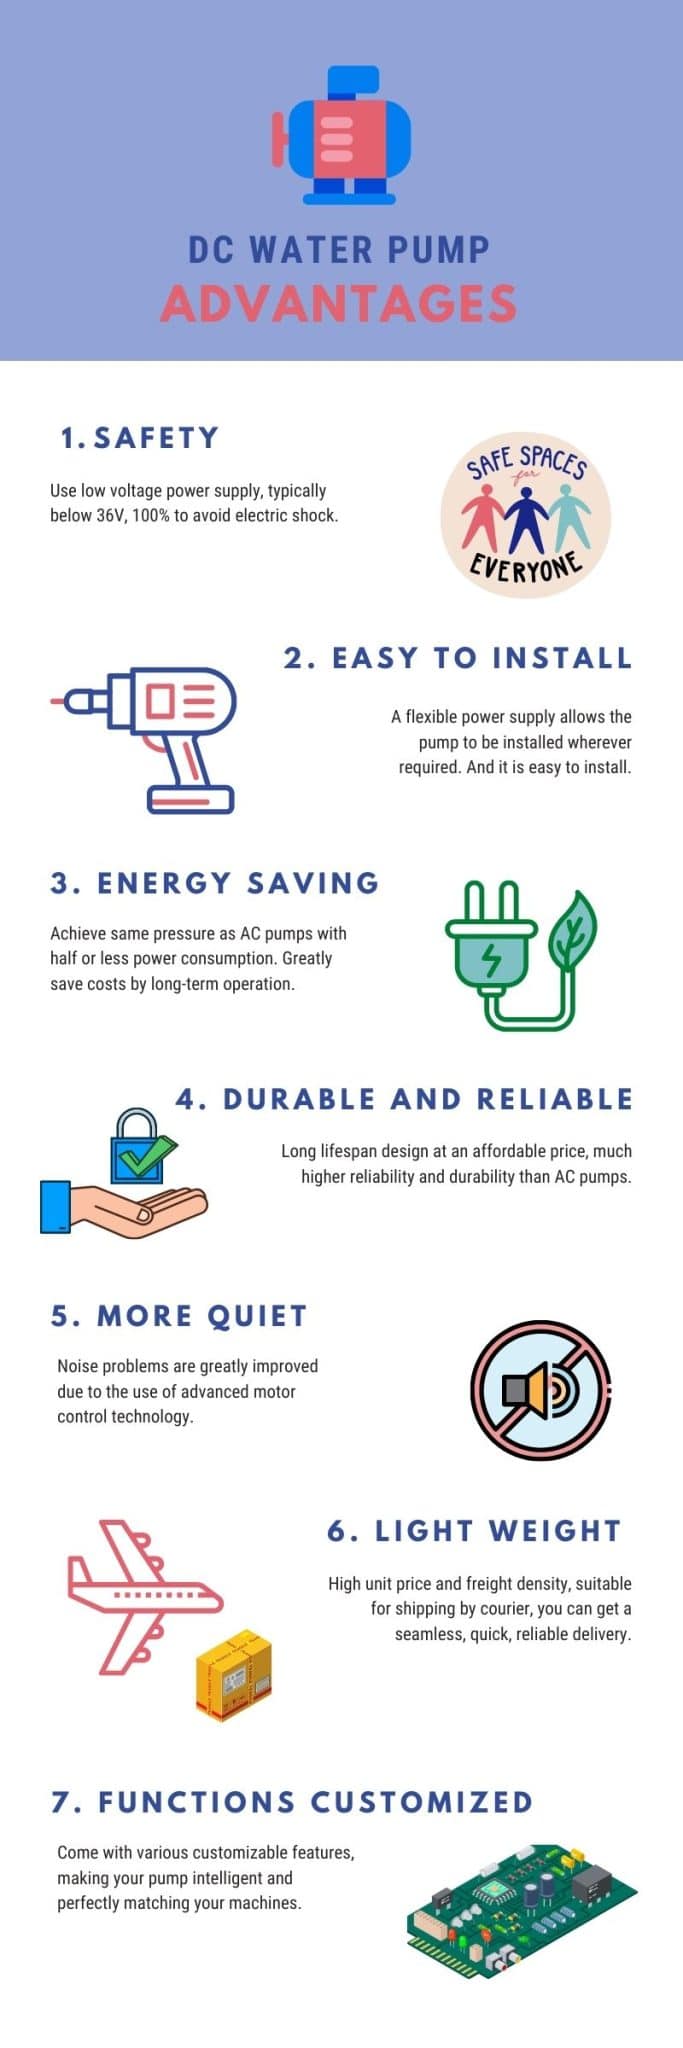 DC Water Pump Advantages Infographic - dcwaterpump.com